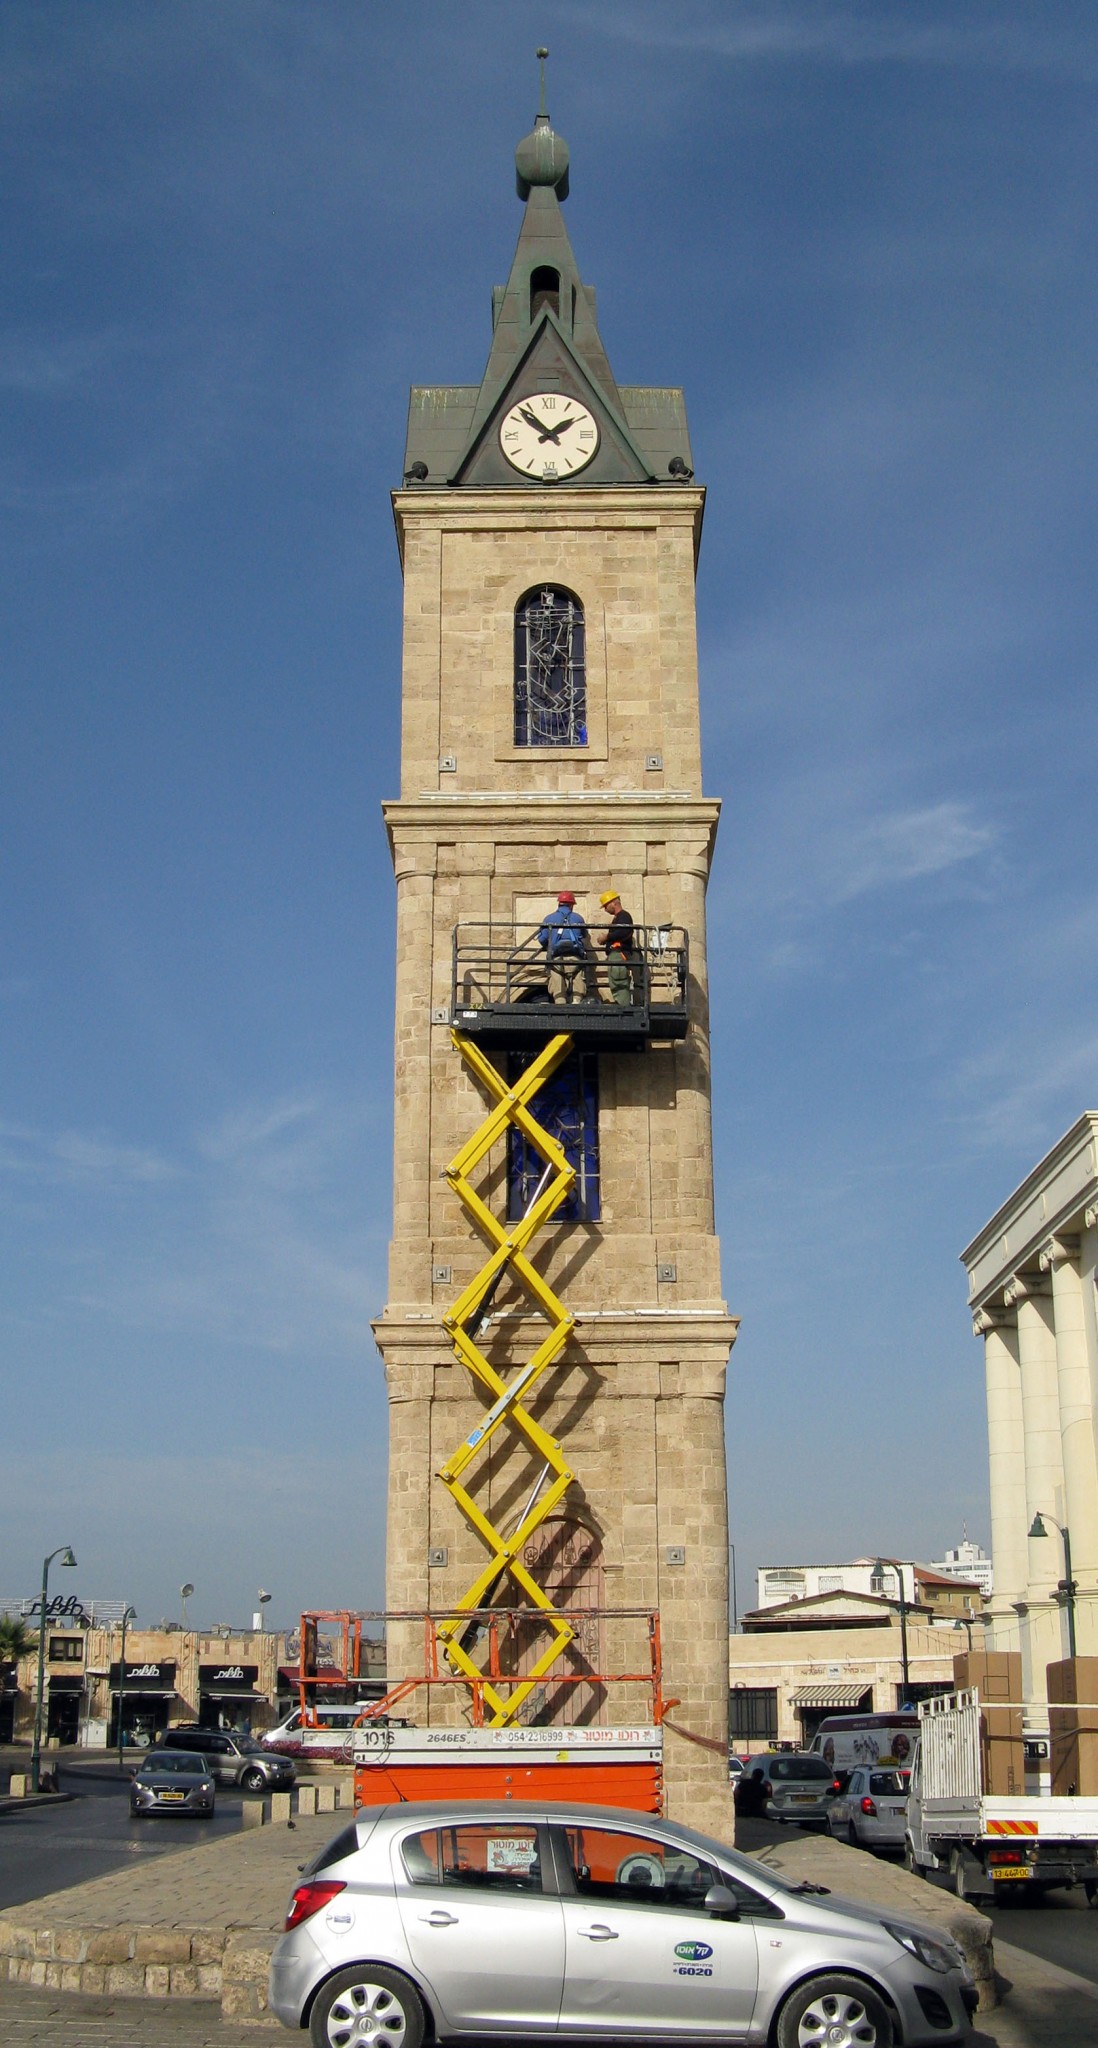 El sellp del sultán es instalado nuevamente en la torre. Foto de Niki Davidov, cortesía de la Autoridad de Antigüedades de Israel.